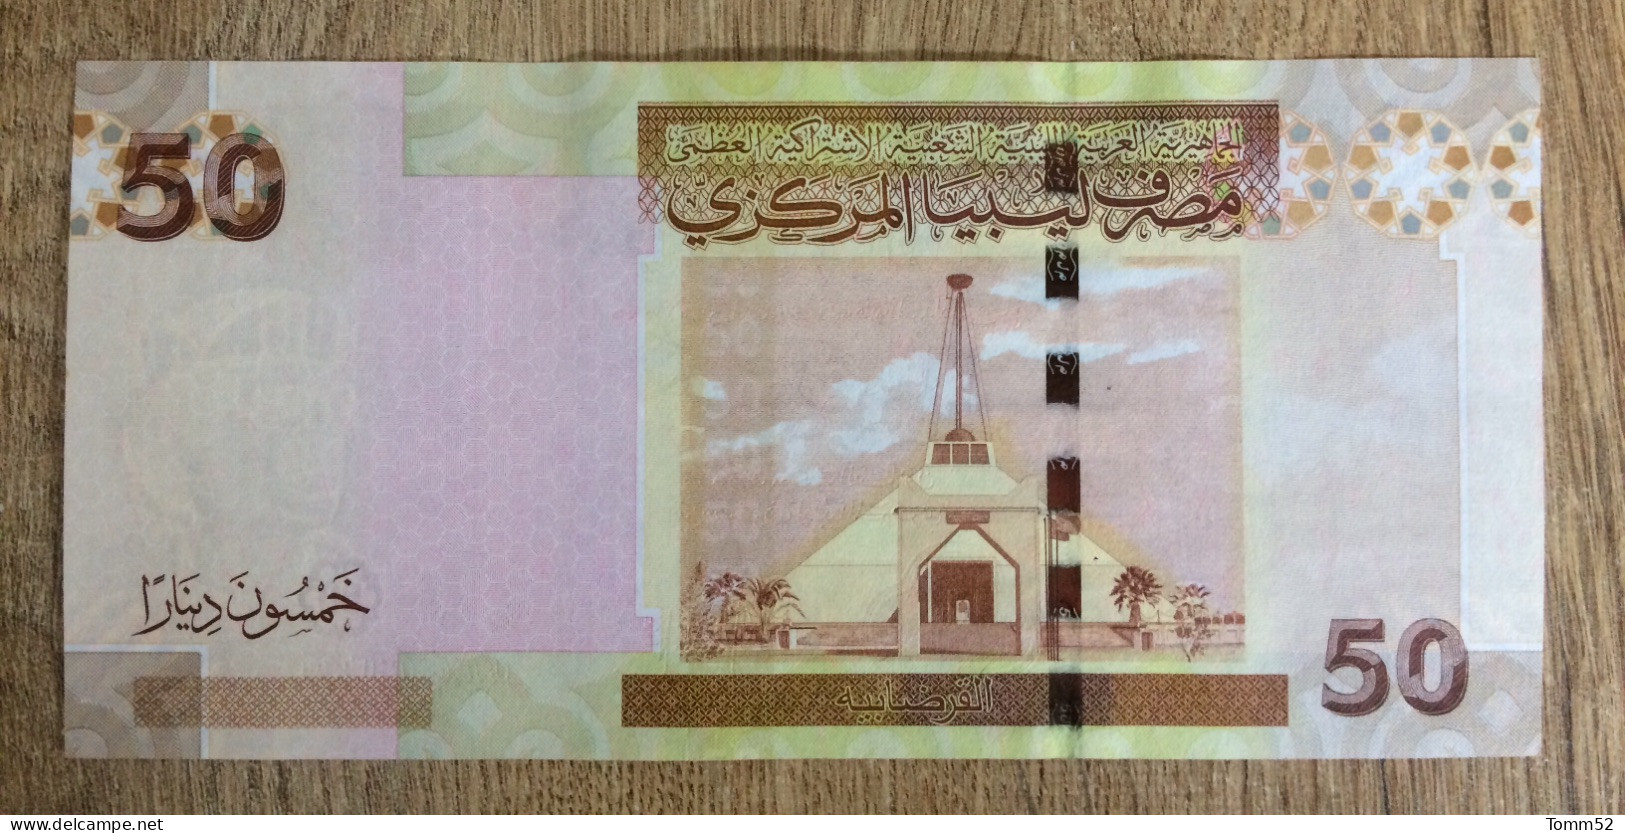 LIBYA 50 Dinars UNC - Libya